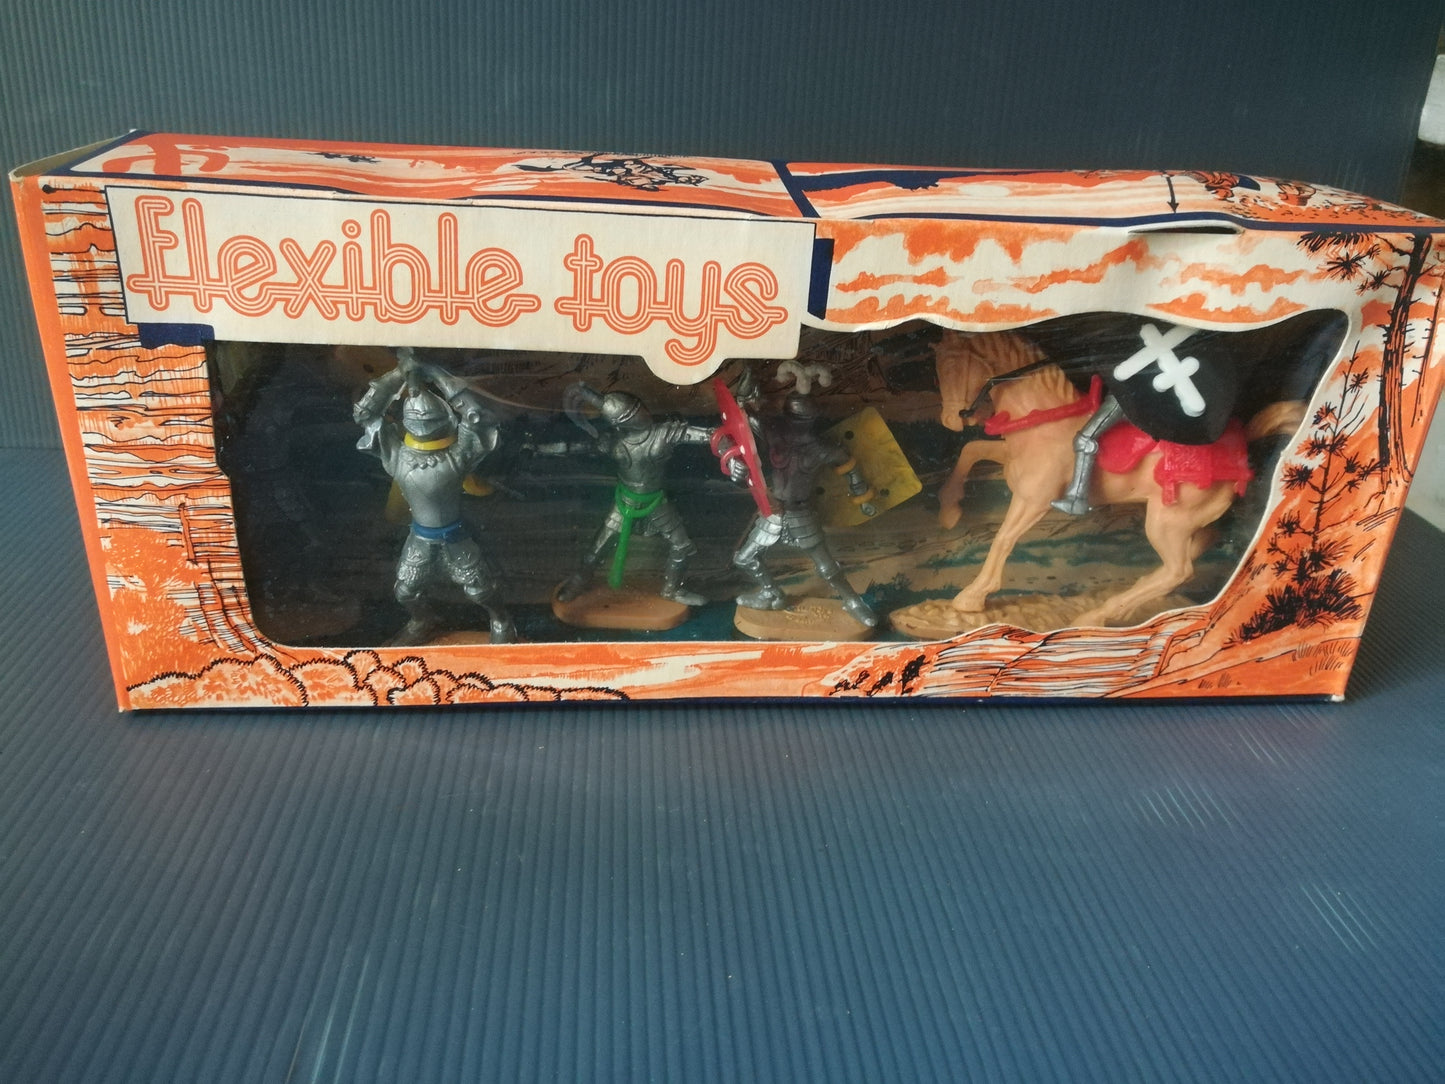 Soldatini Cherilea
Serie Medioevali Flexible Toys